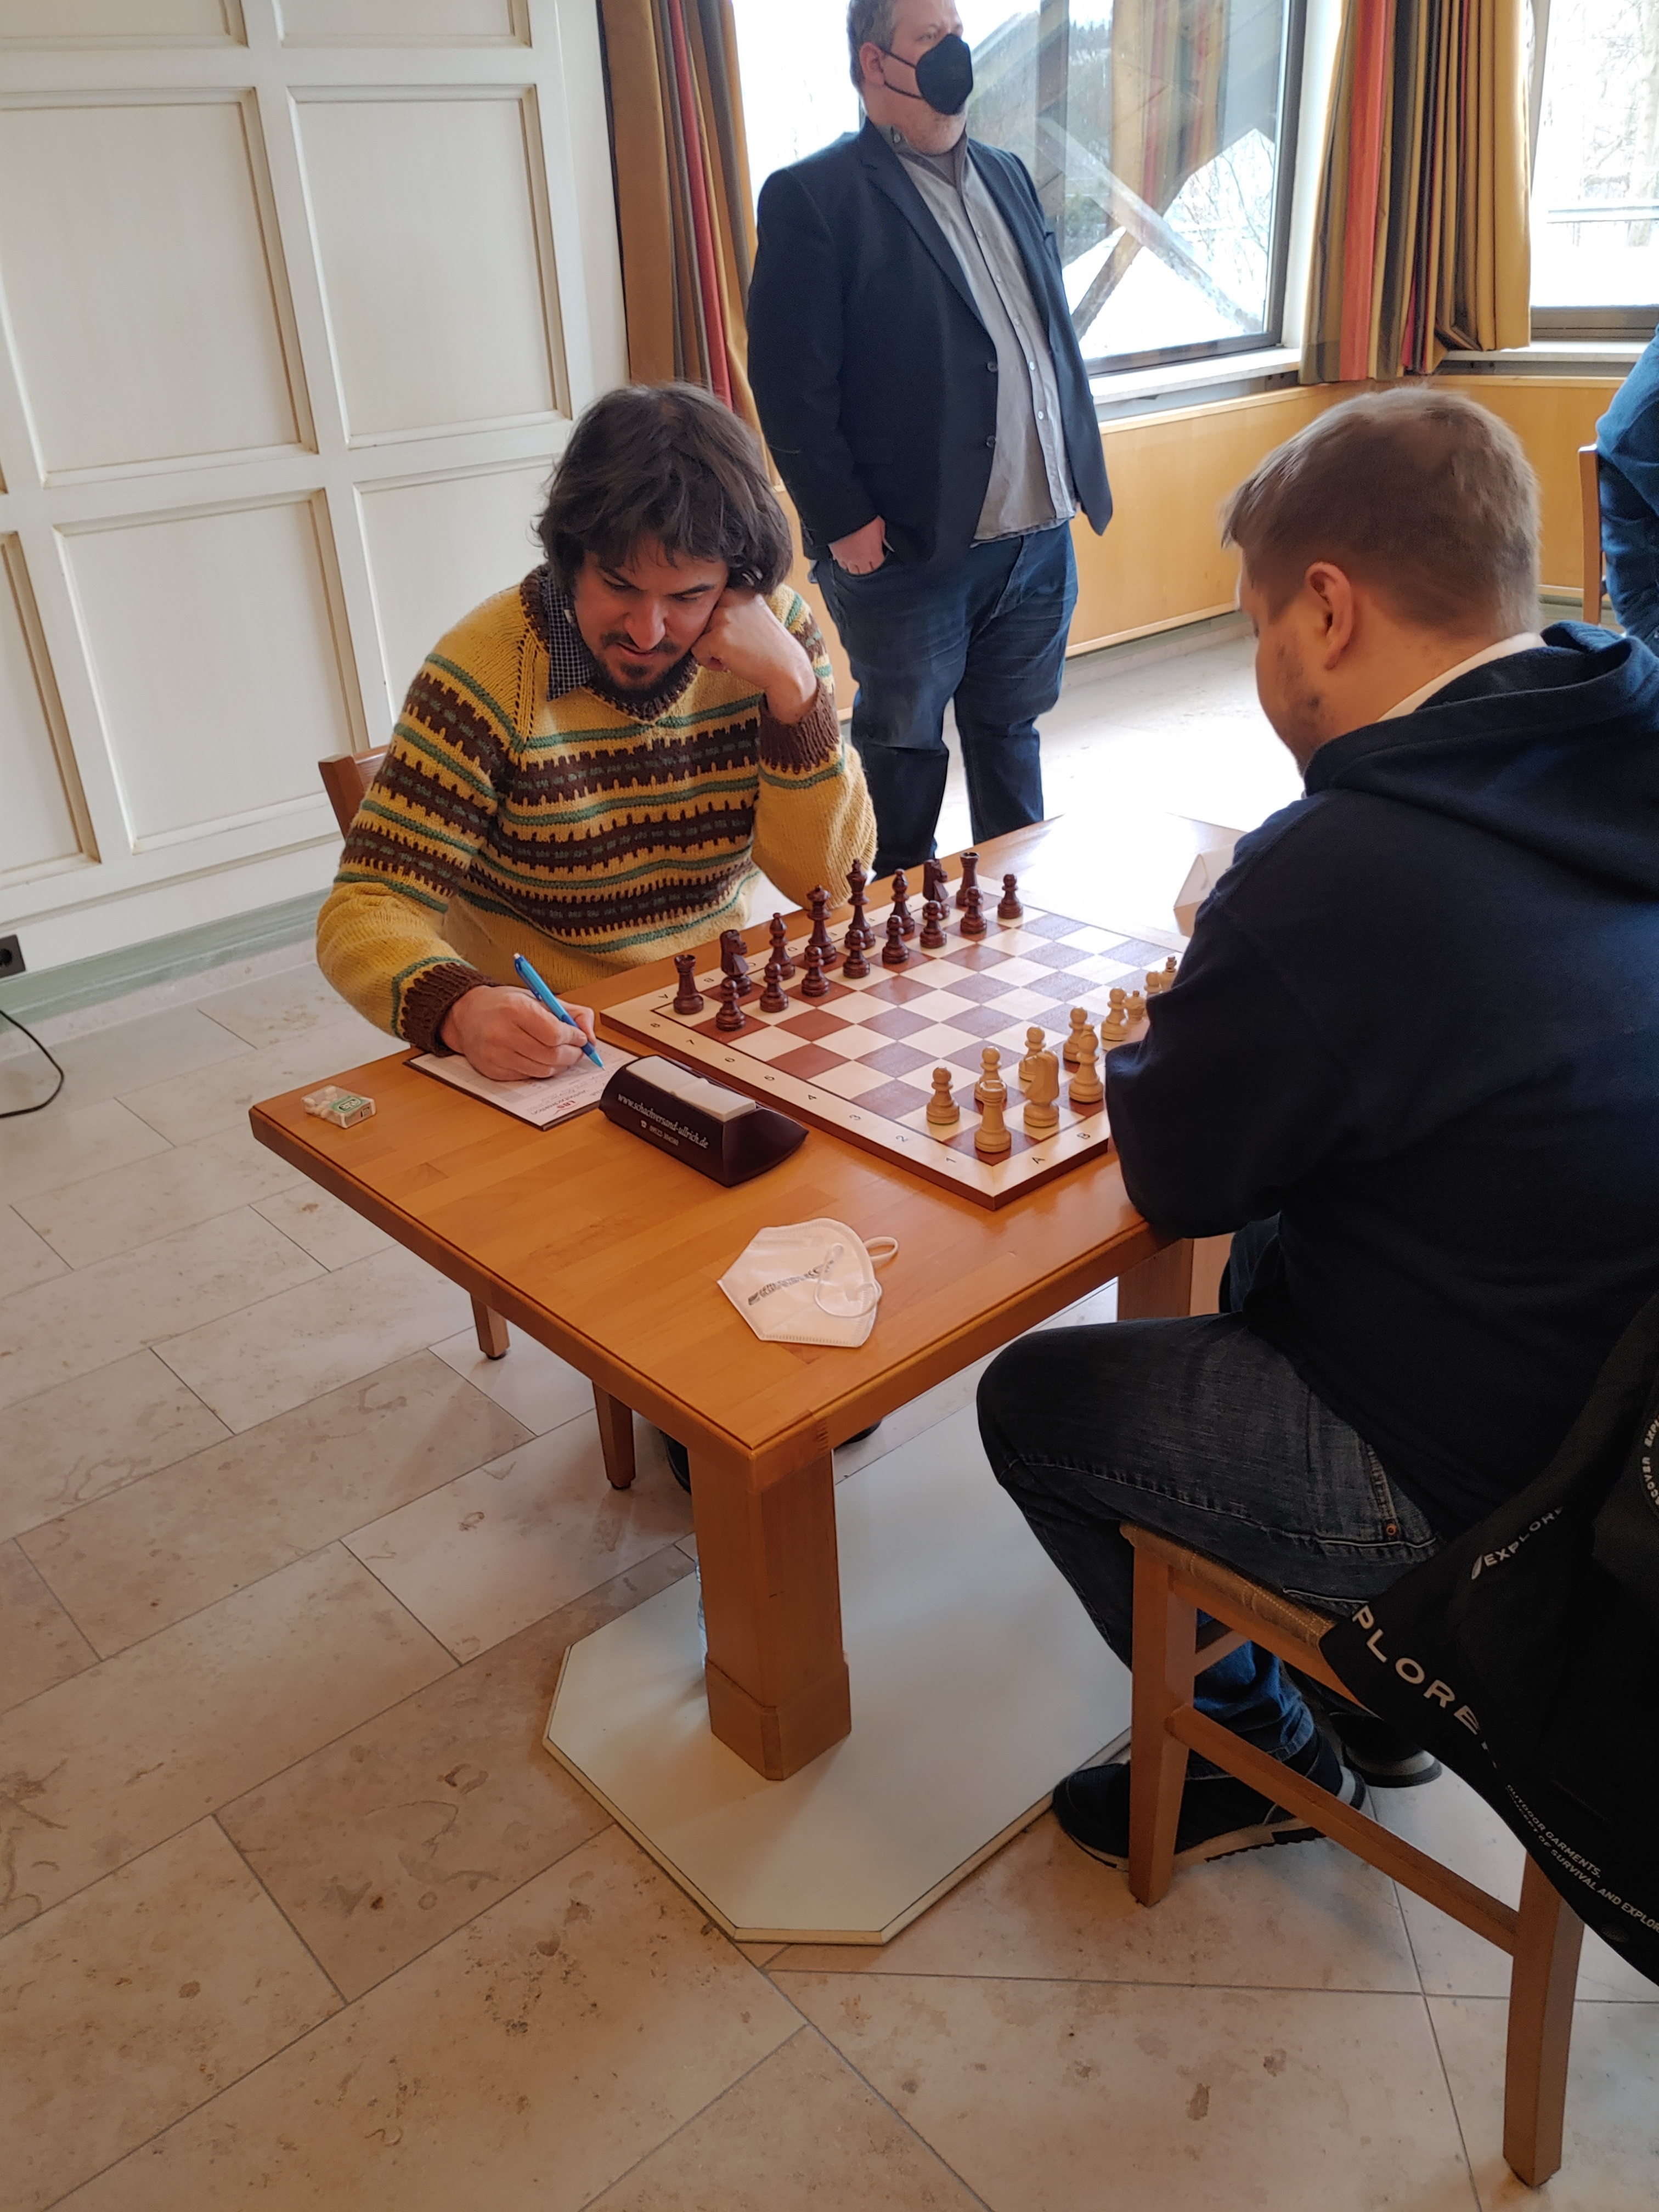 Online Schach - Seite 2 von 3 - Bayerische Schachjugend